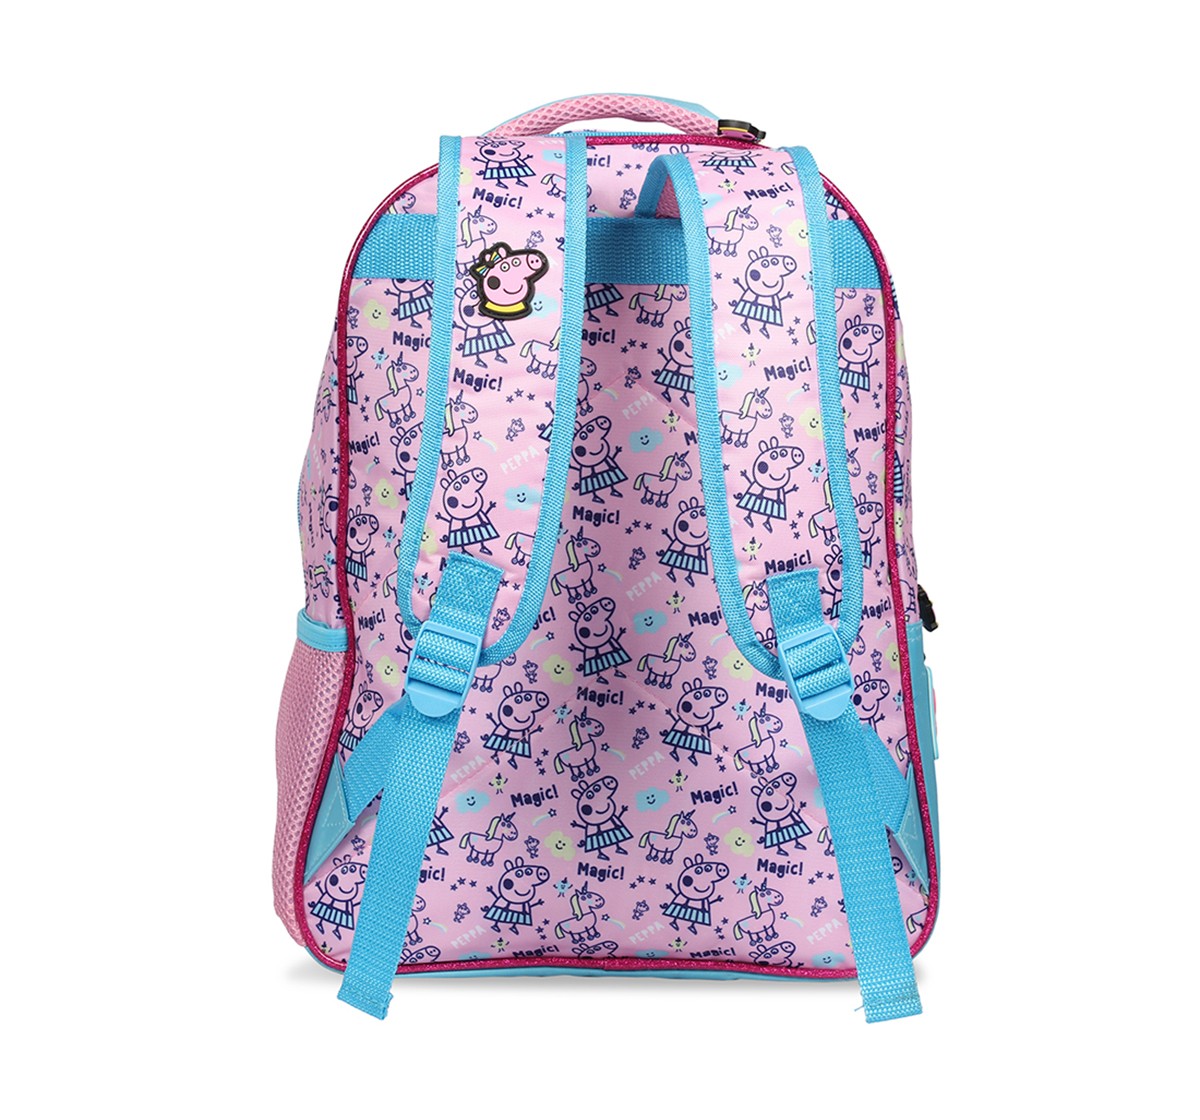  Peppa Pig Hood School Bag 41 Cm  for Kids age 7Y+ 